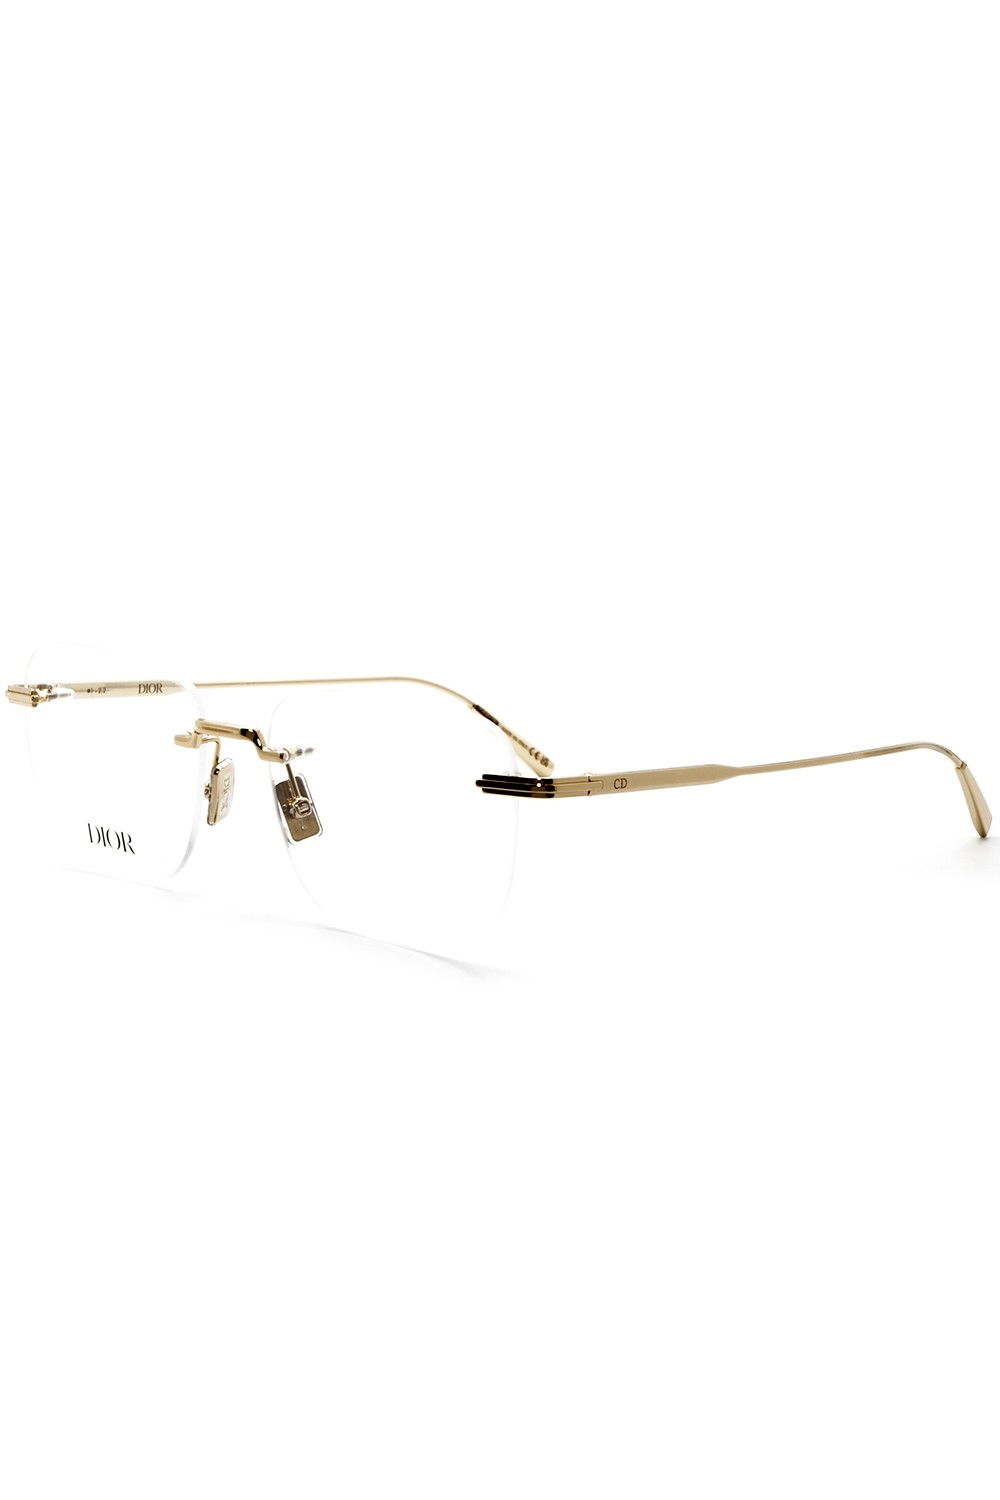 Christian Dior - Occhiali da vista in metallo glasant squadrati unisex oro -